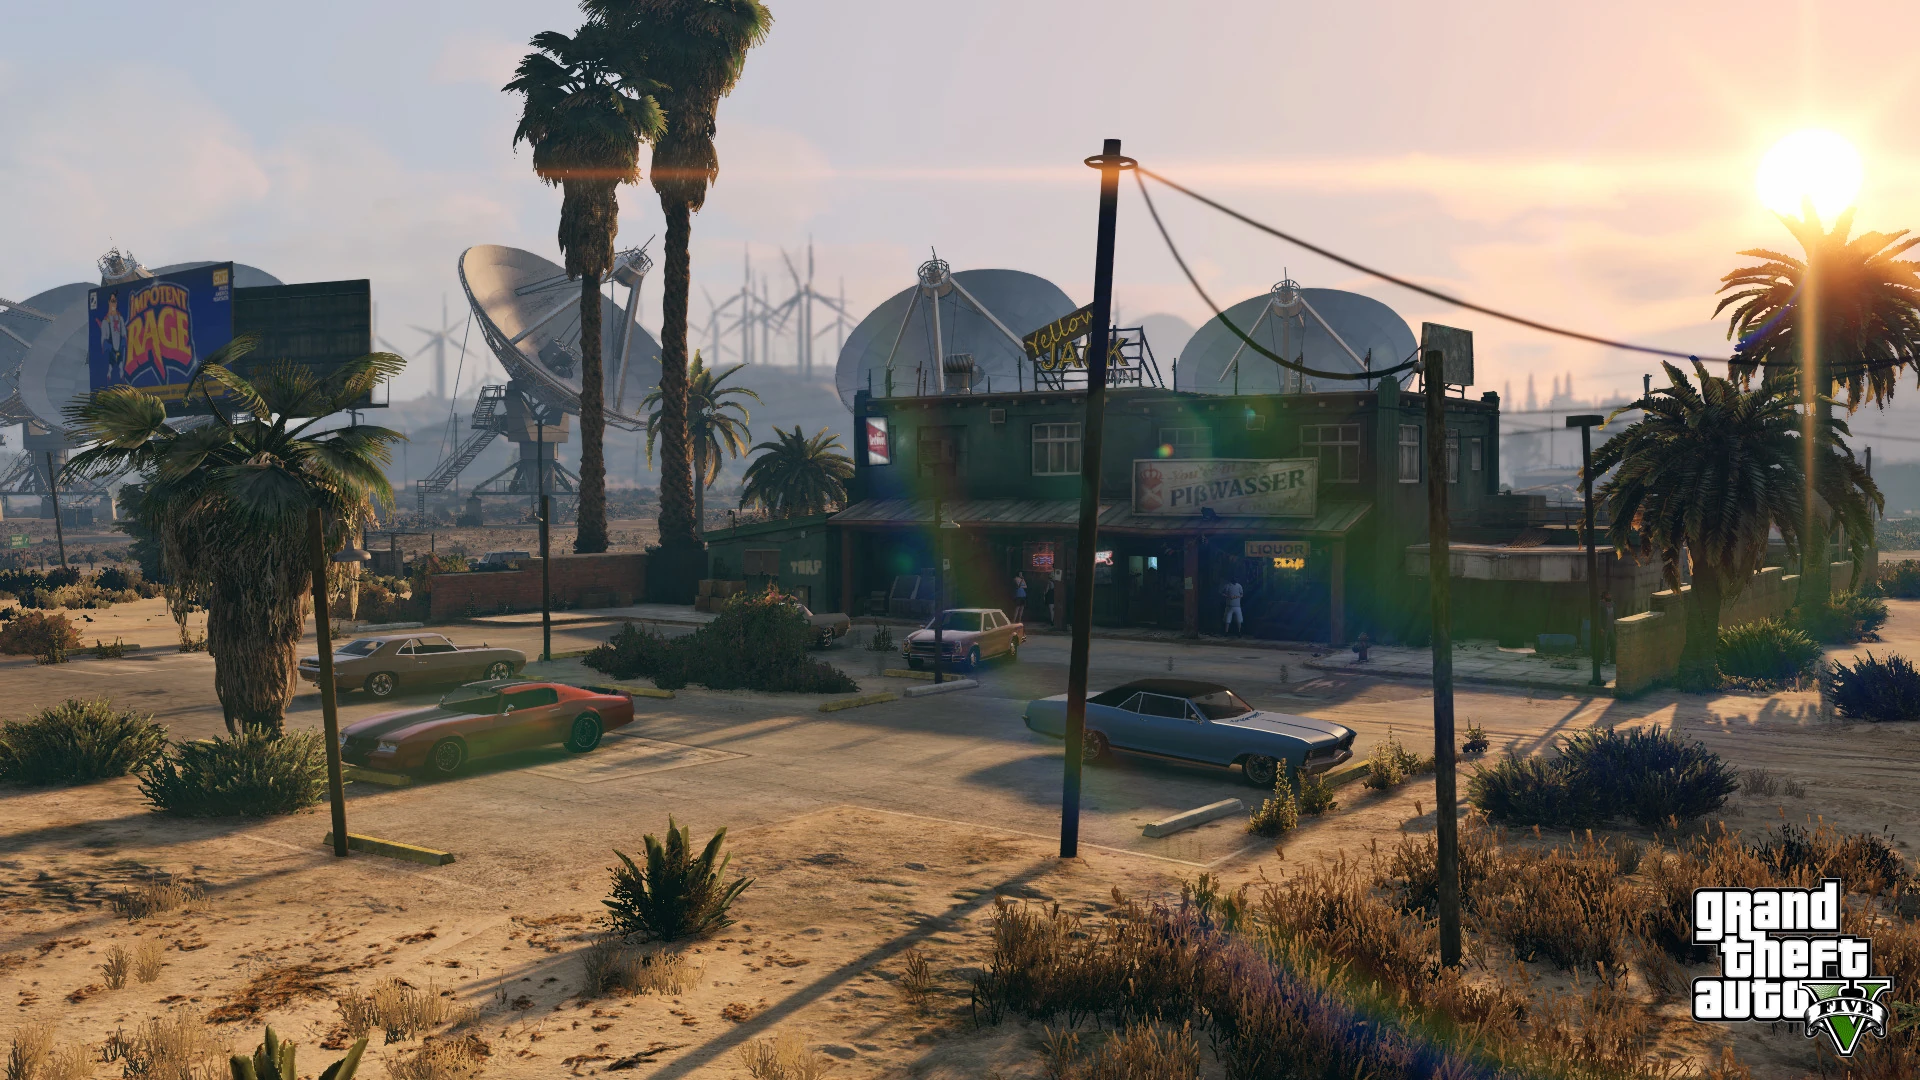 Grand Theft Auto V - PS4 Screenshot 13 - Locação